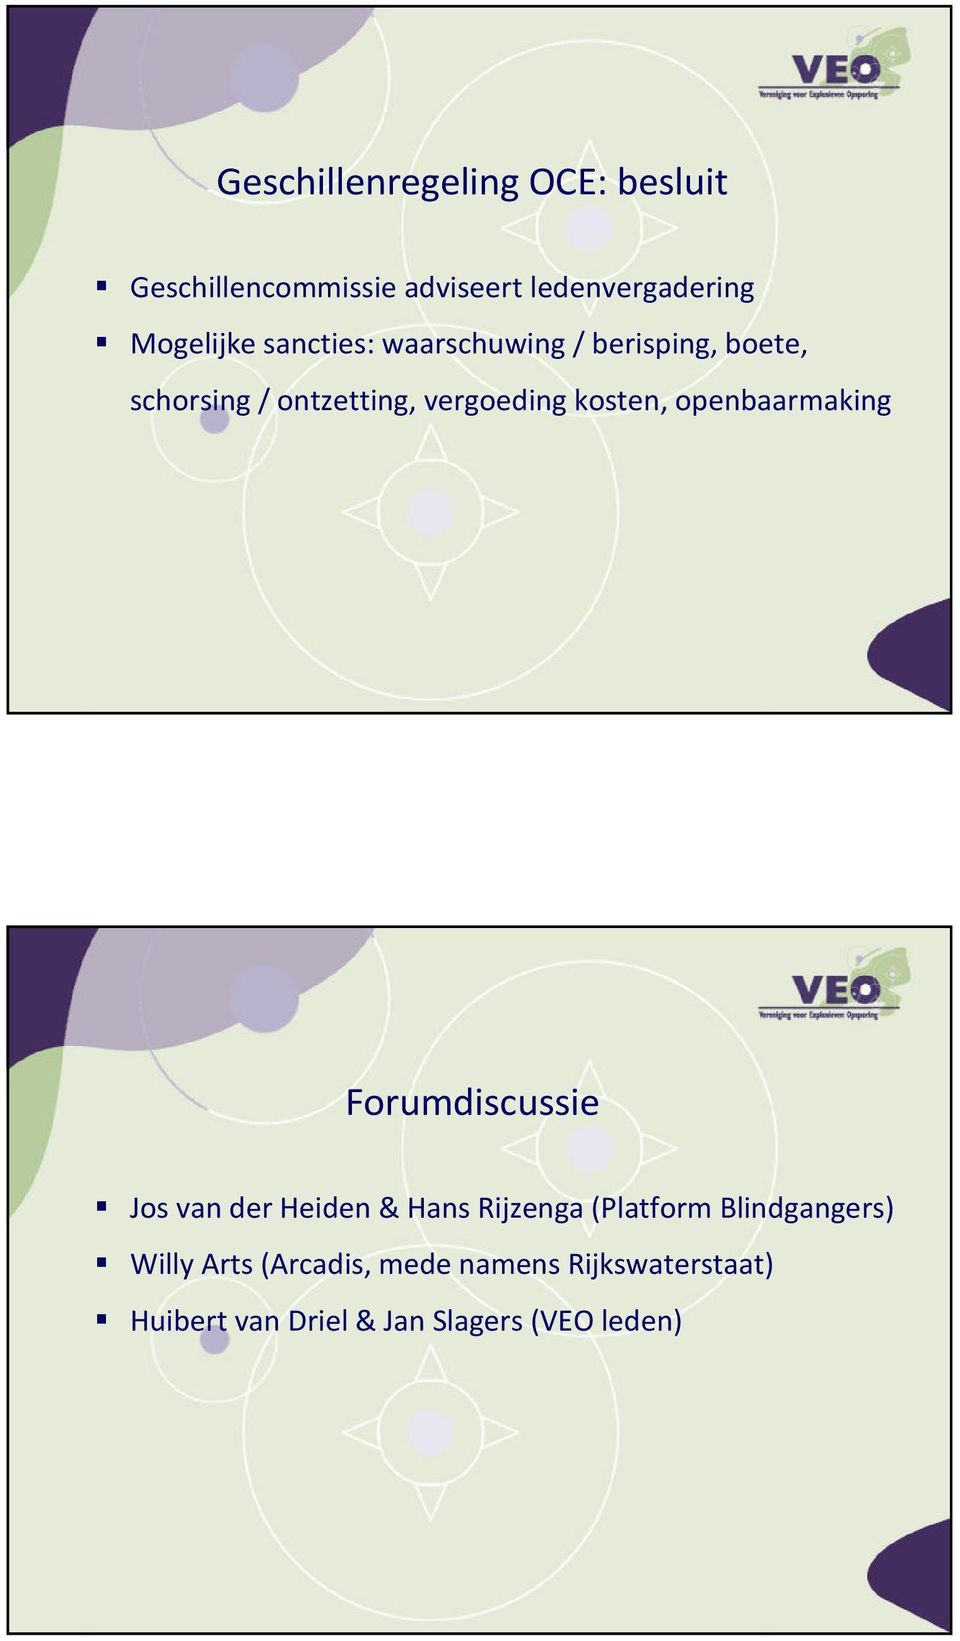 openbaarmaking Forumdiscussie Jos van der Heiden & Hans Rijzenga(Platform Blindgangers)